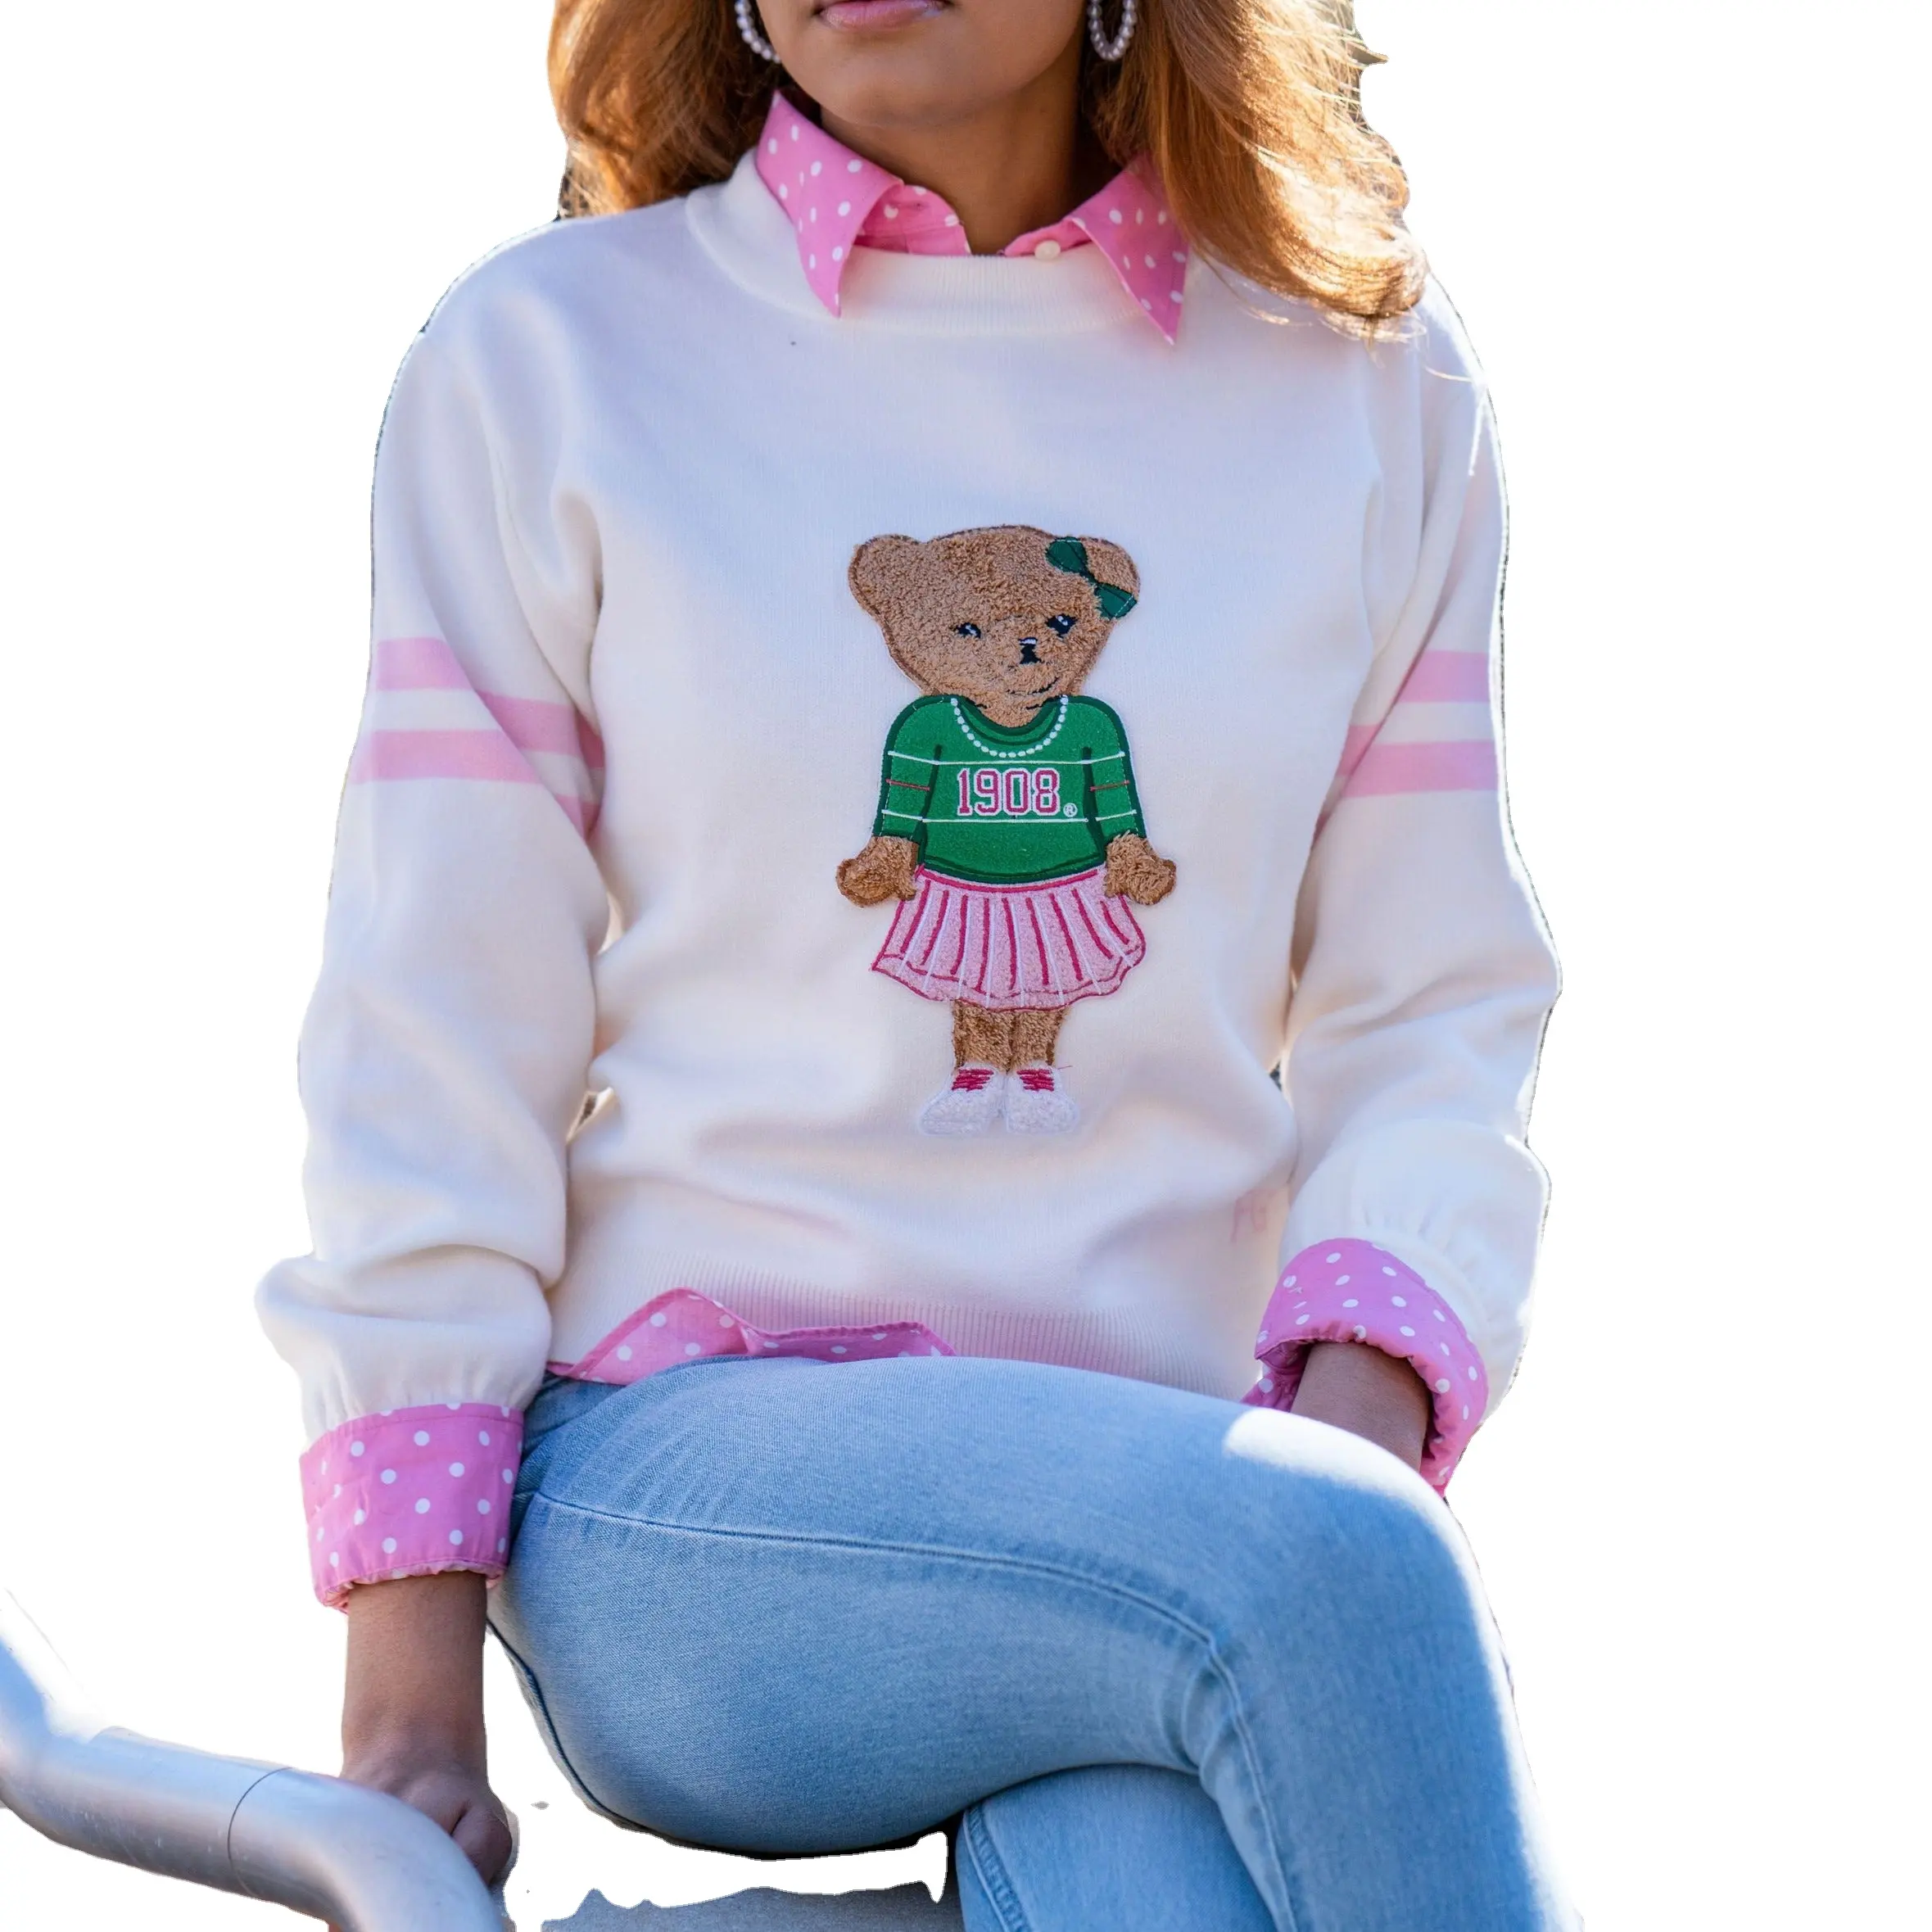 제조 업체 사용자 정의 프레피 베어 셔닐 패치 긴 소매 겨울 가을 여성 풀오버 니트 스웨터